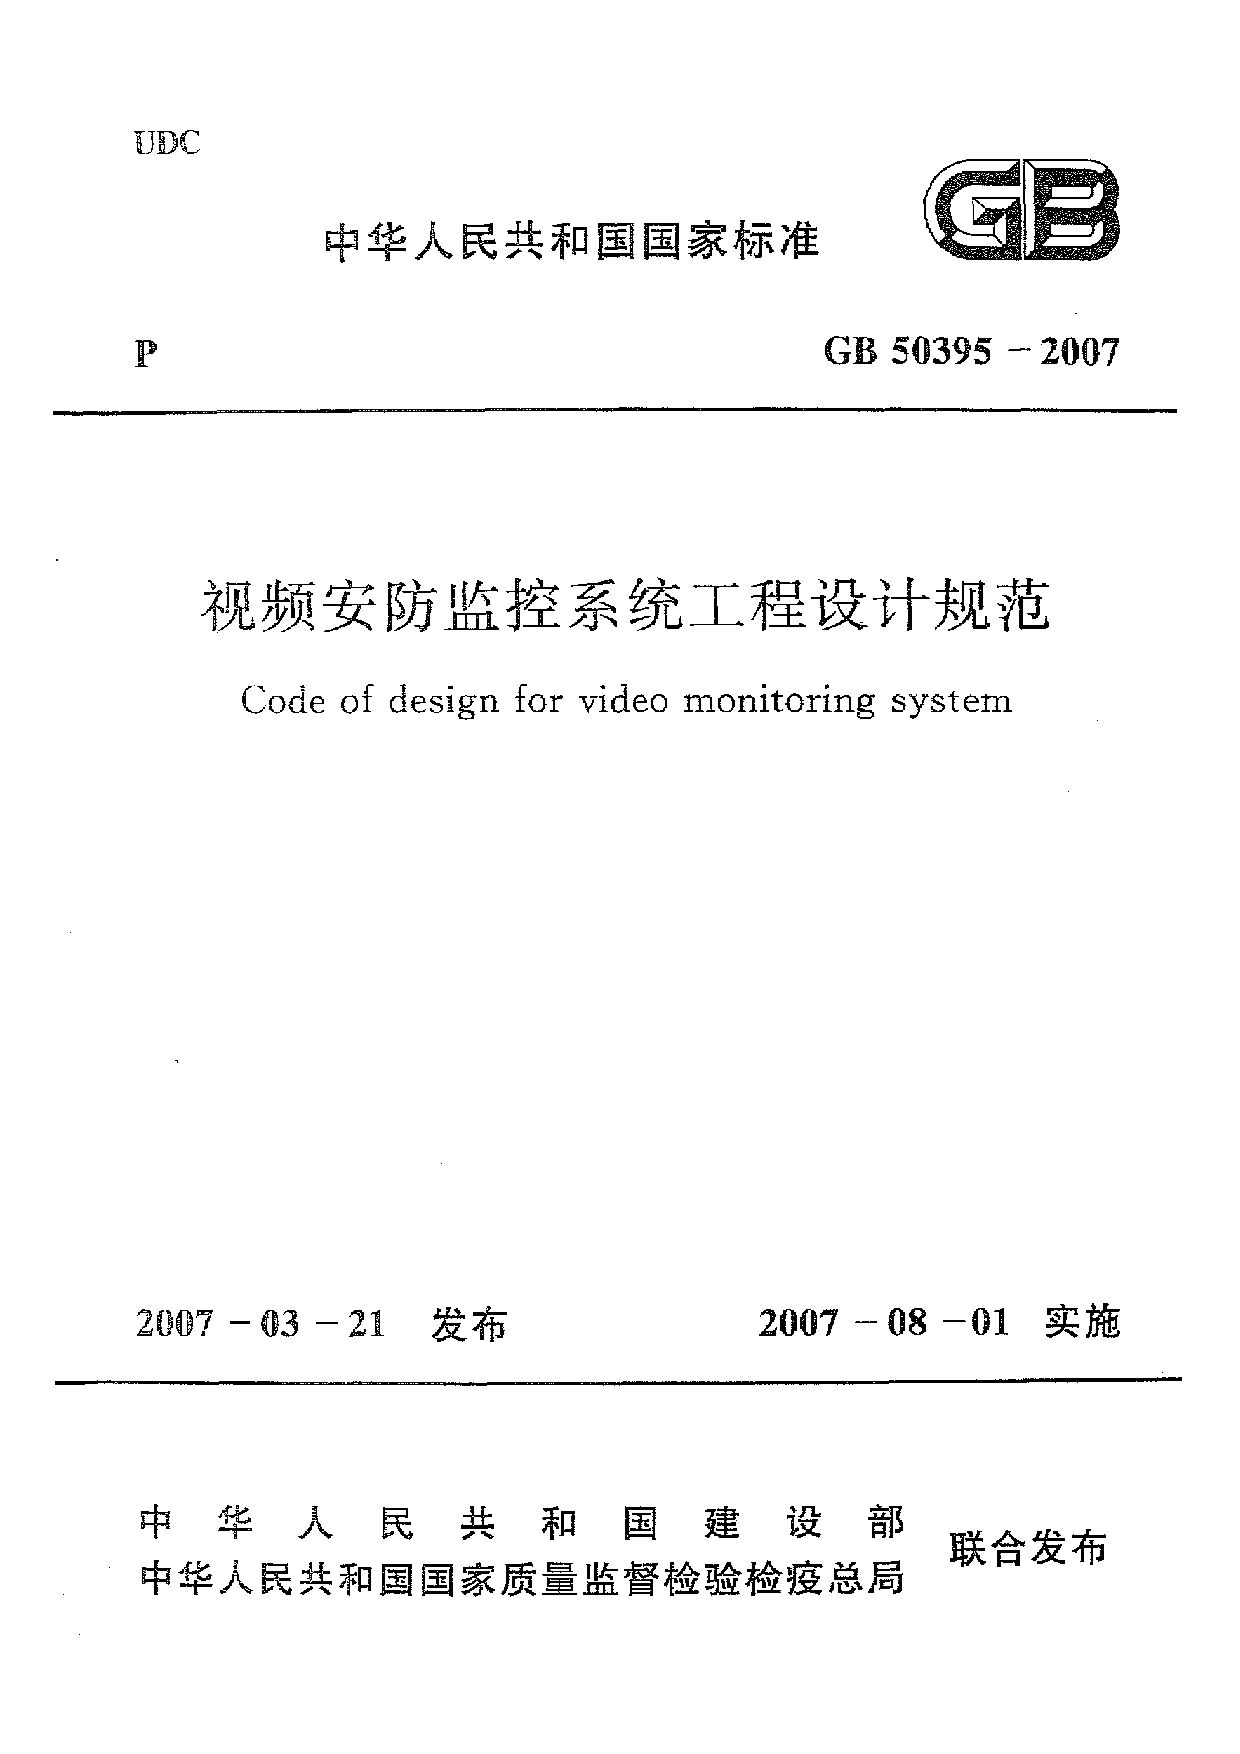 GB 50395-2007封面图